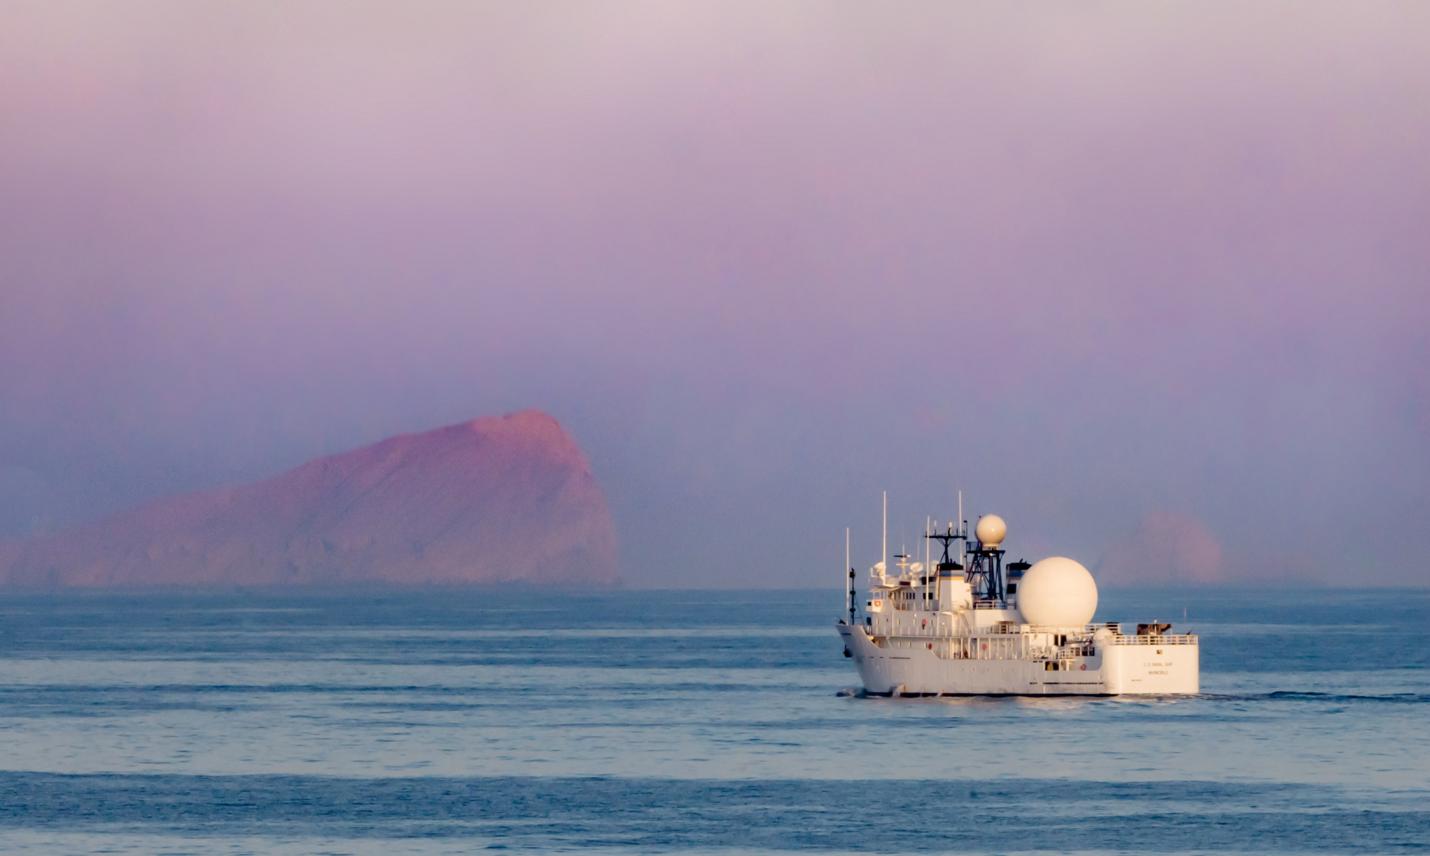 Американский опытовый корабль ракетного полигона USNS Invincible (T-AGM 24) в Ормузском проливе, фото сделано 14 ноября 2018 года с борта корабля сопровождения, эсминца USS Jason Dunham (DDG 109)